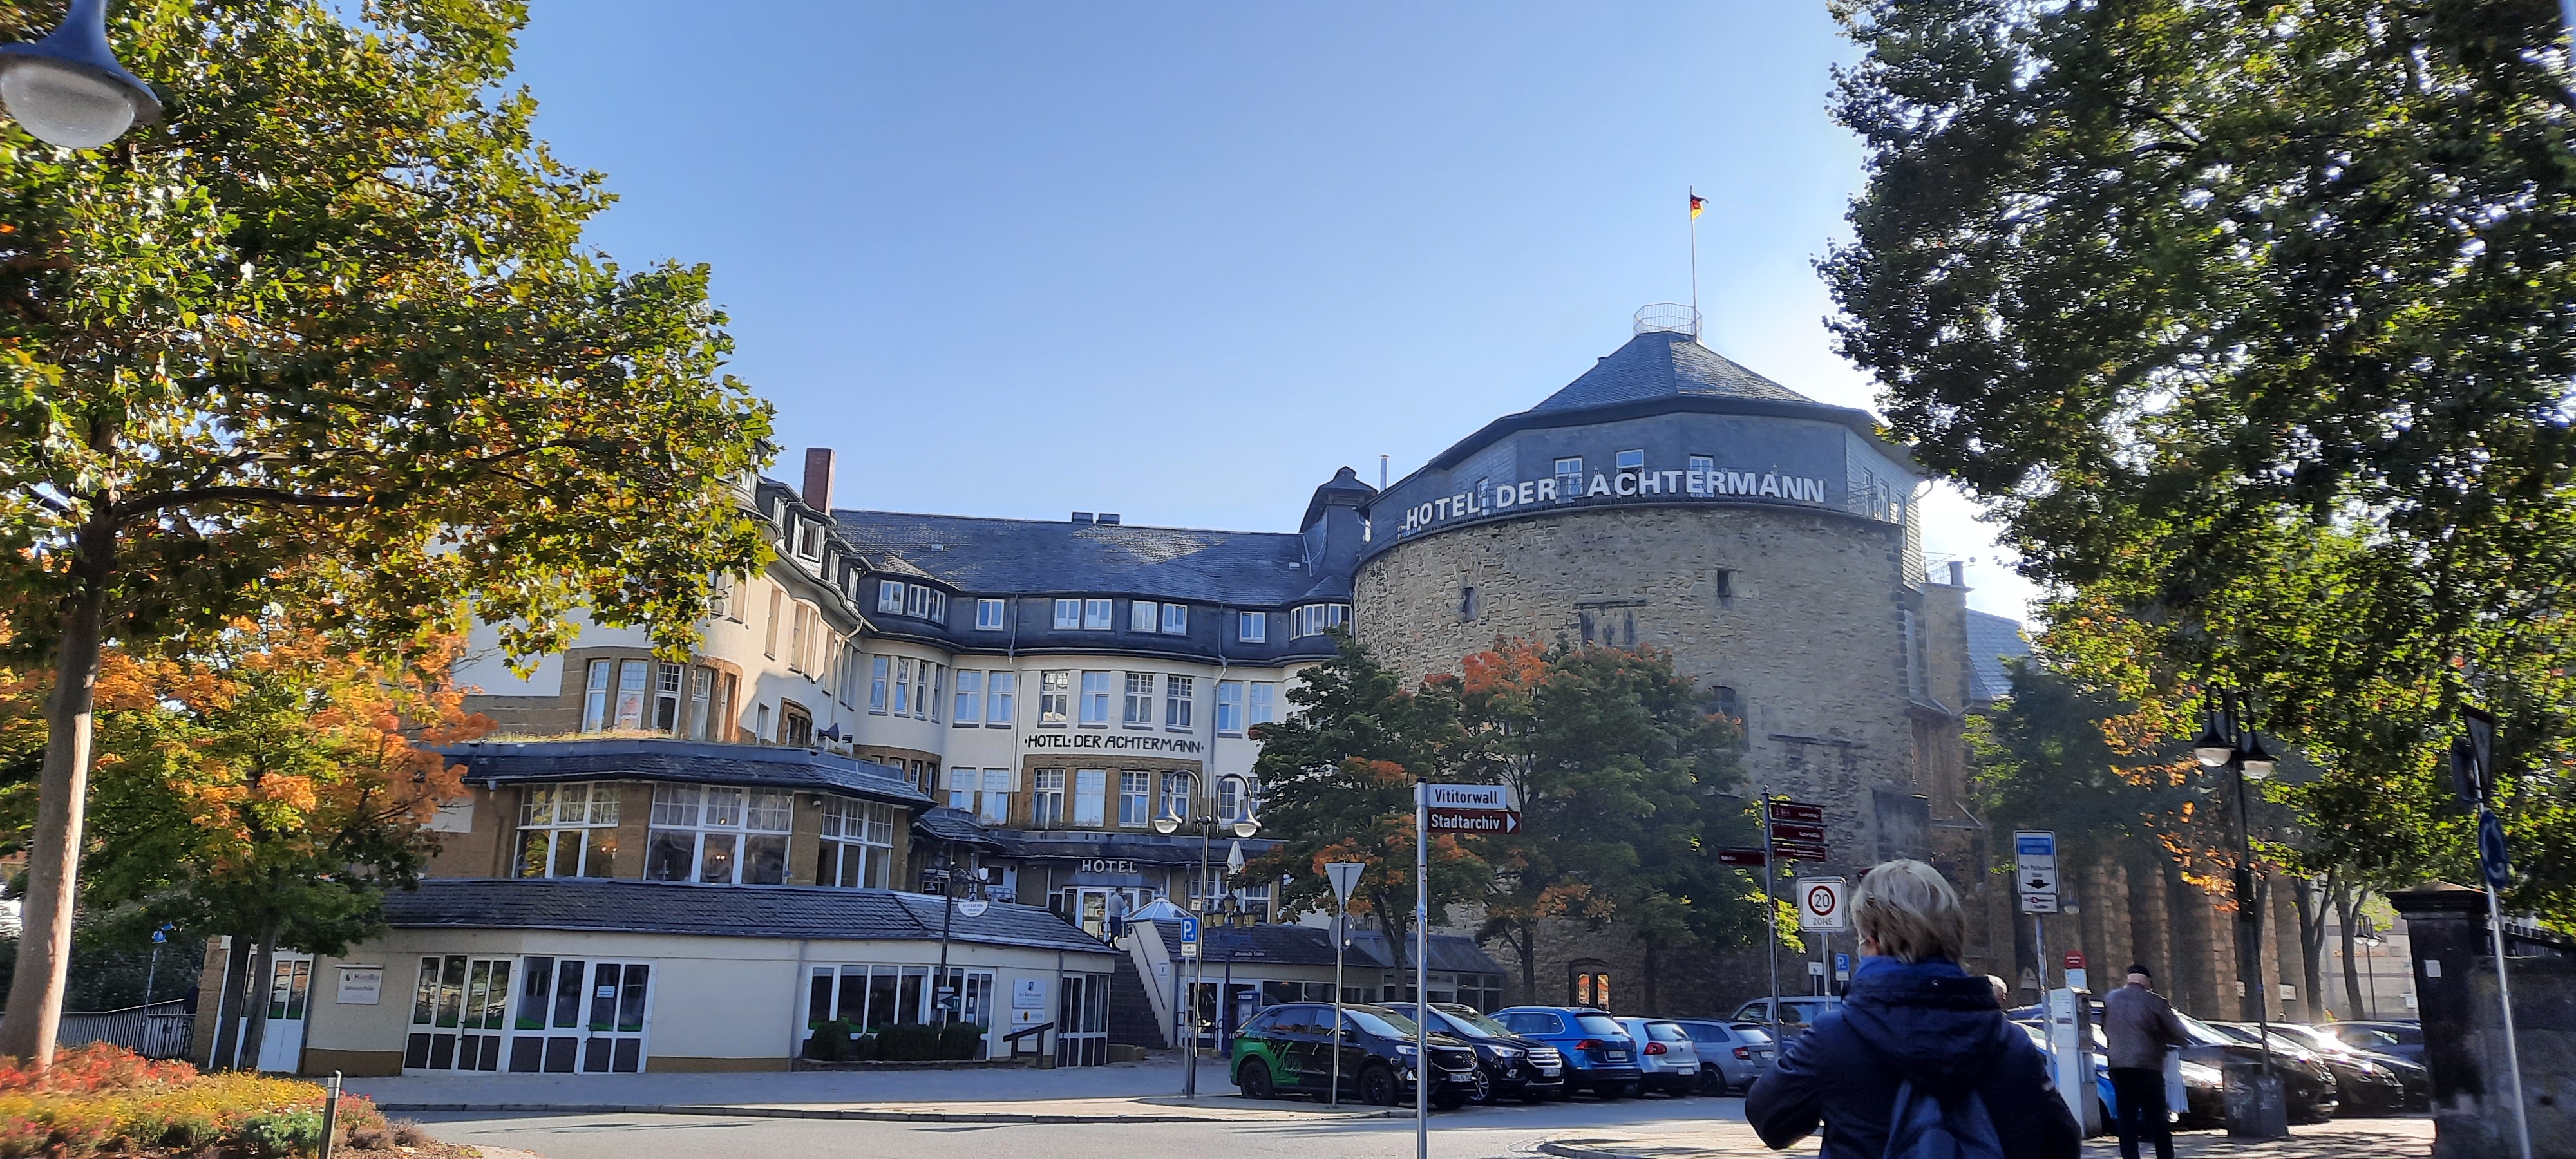 Bild 1 Der Achtermann aZIS Hotel Betriebs GmbH in Goslar